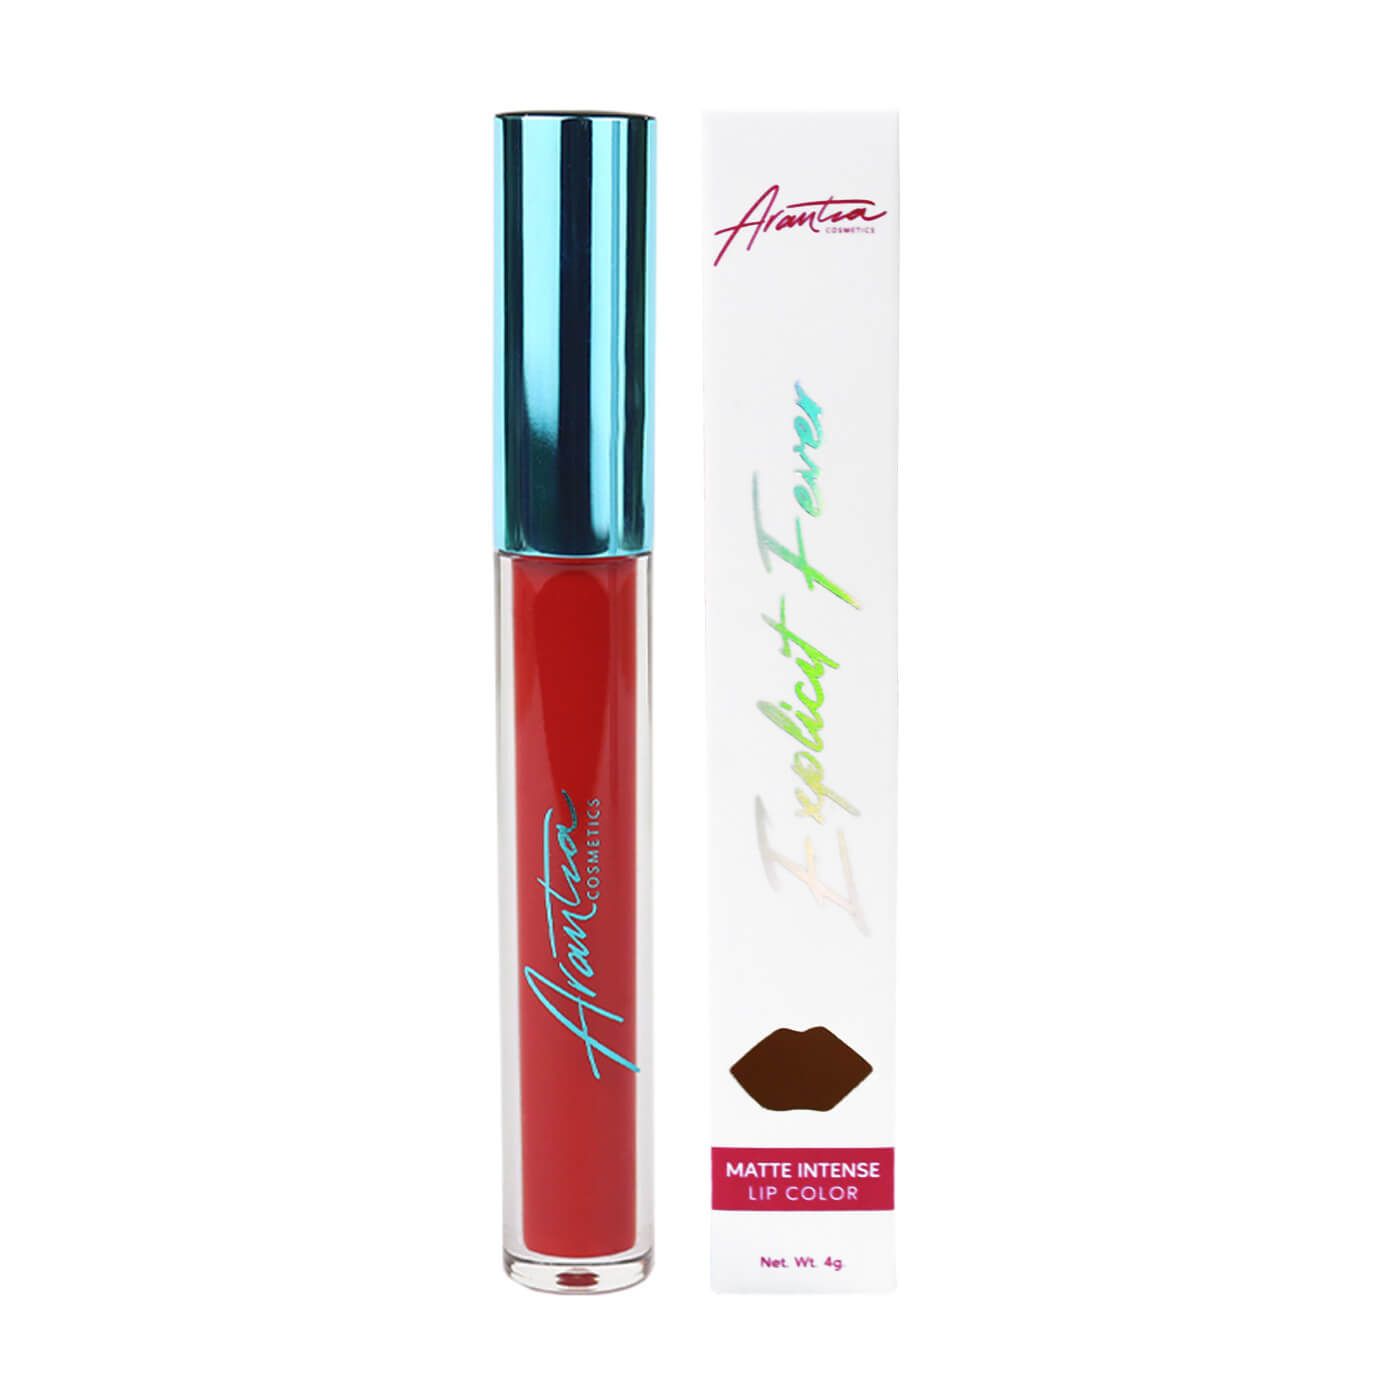 TEMPTING JELLY Matte Intense Lip Color - ARANZA COSMETICS - Compra Maquillaje y Artículos de Belleza | Belle Queen Cosmetics